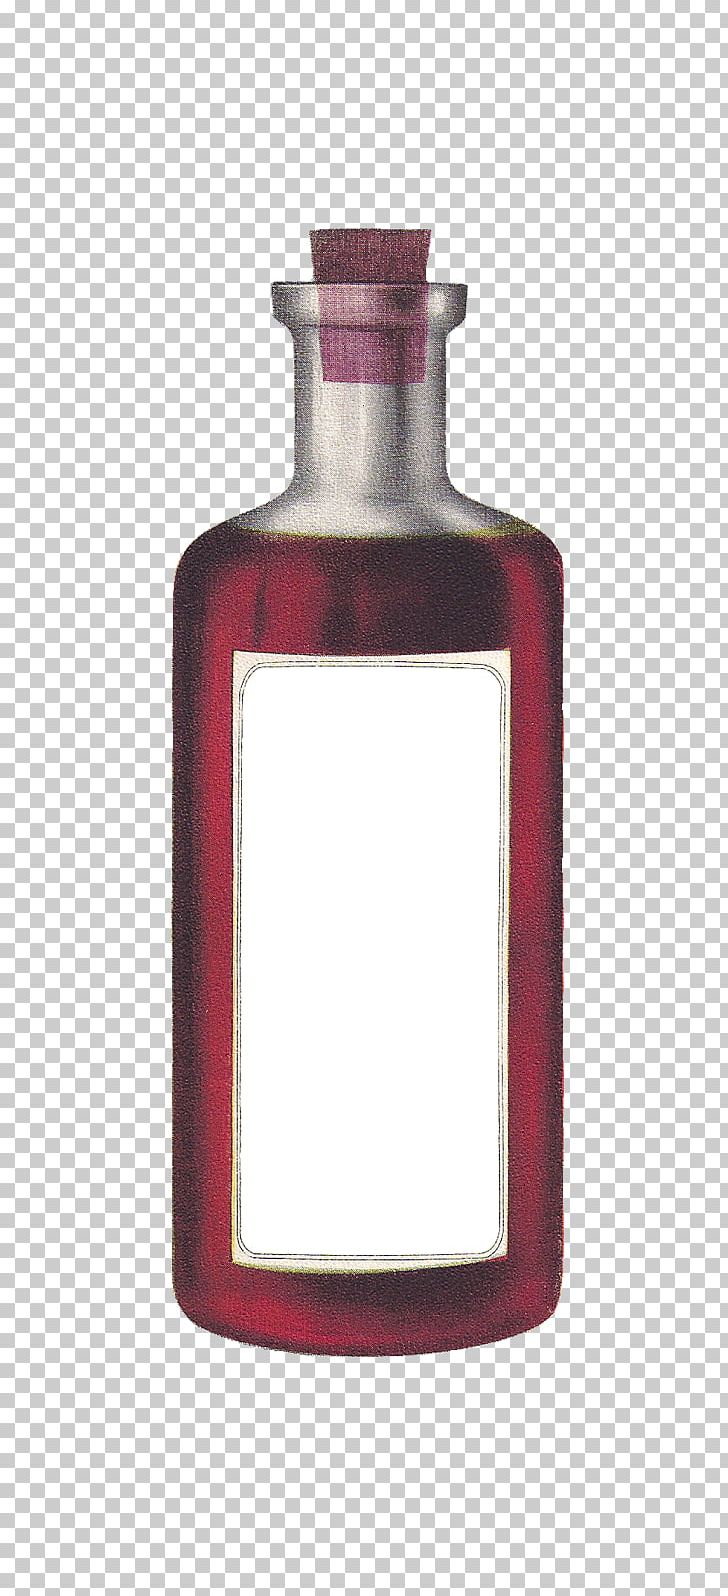 Glass Bottle Label Frog PNG, Clipart, Antique, Art, Barware, Blank, Bottle Free PNG Download